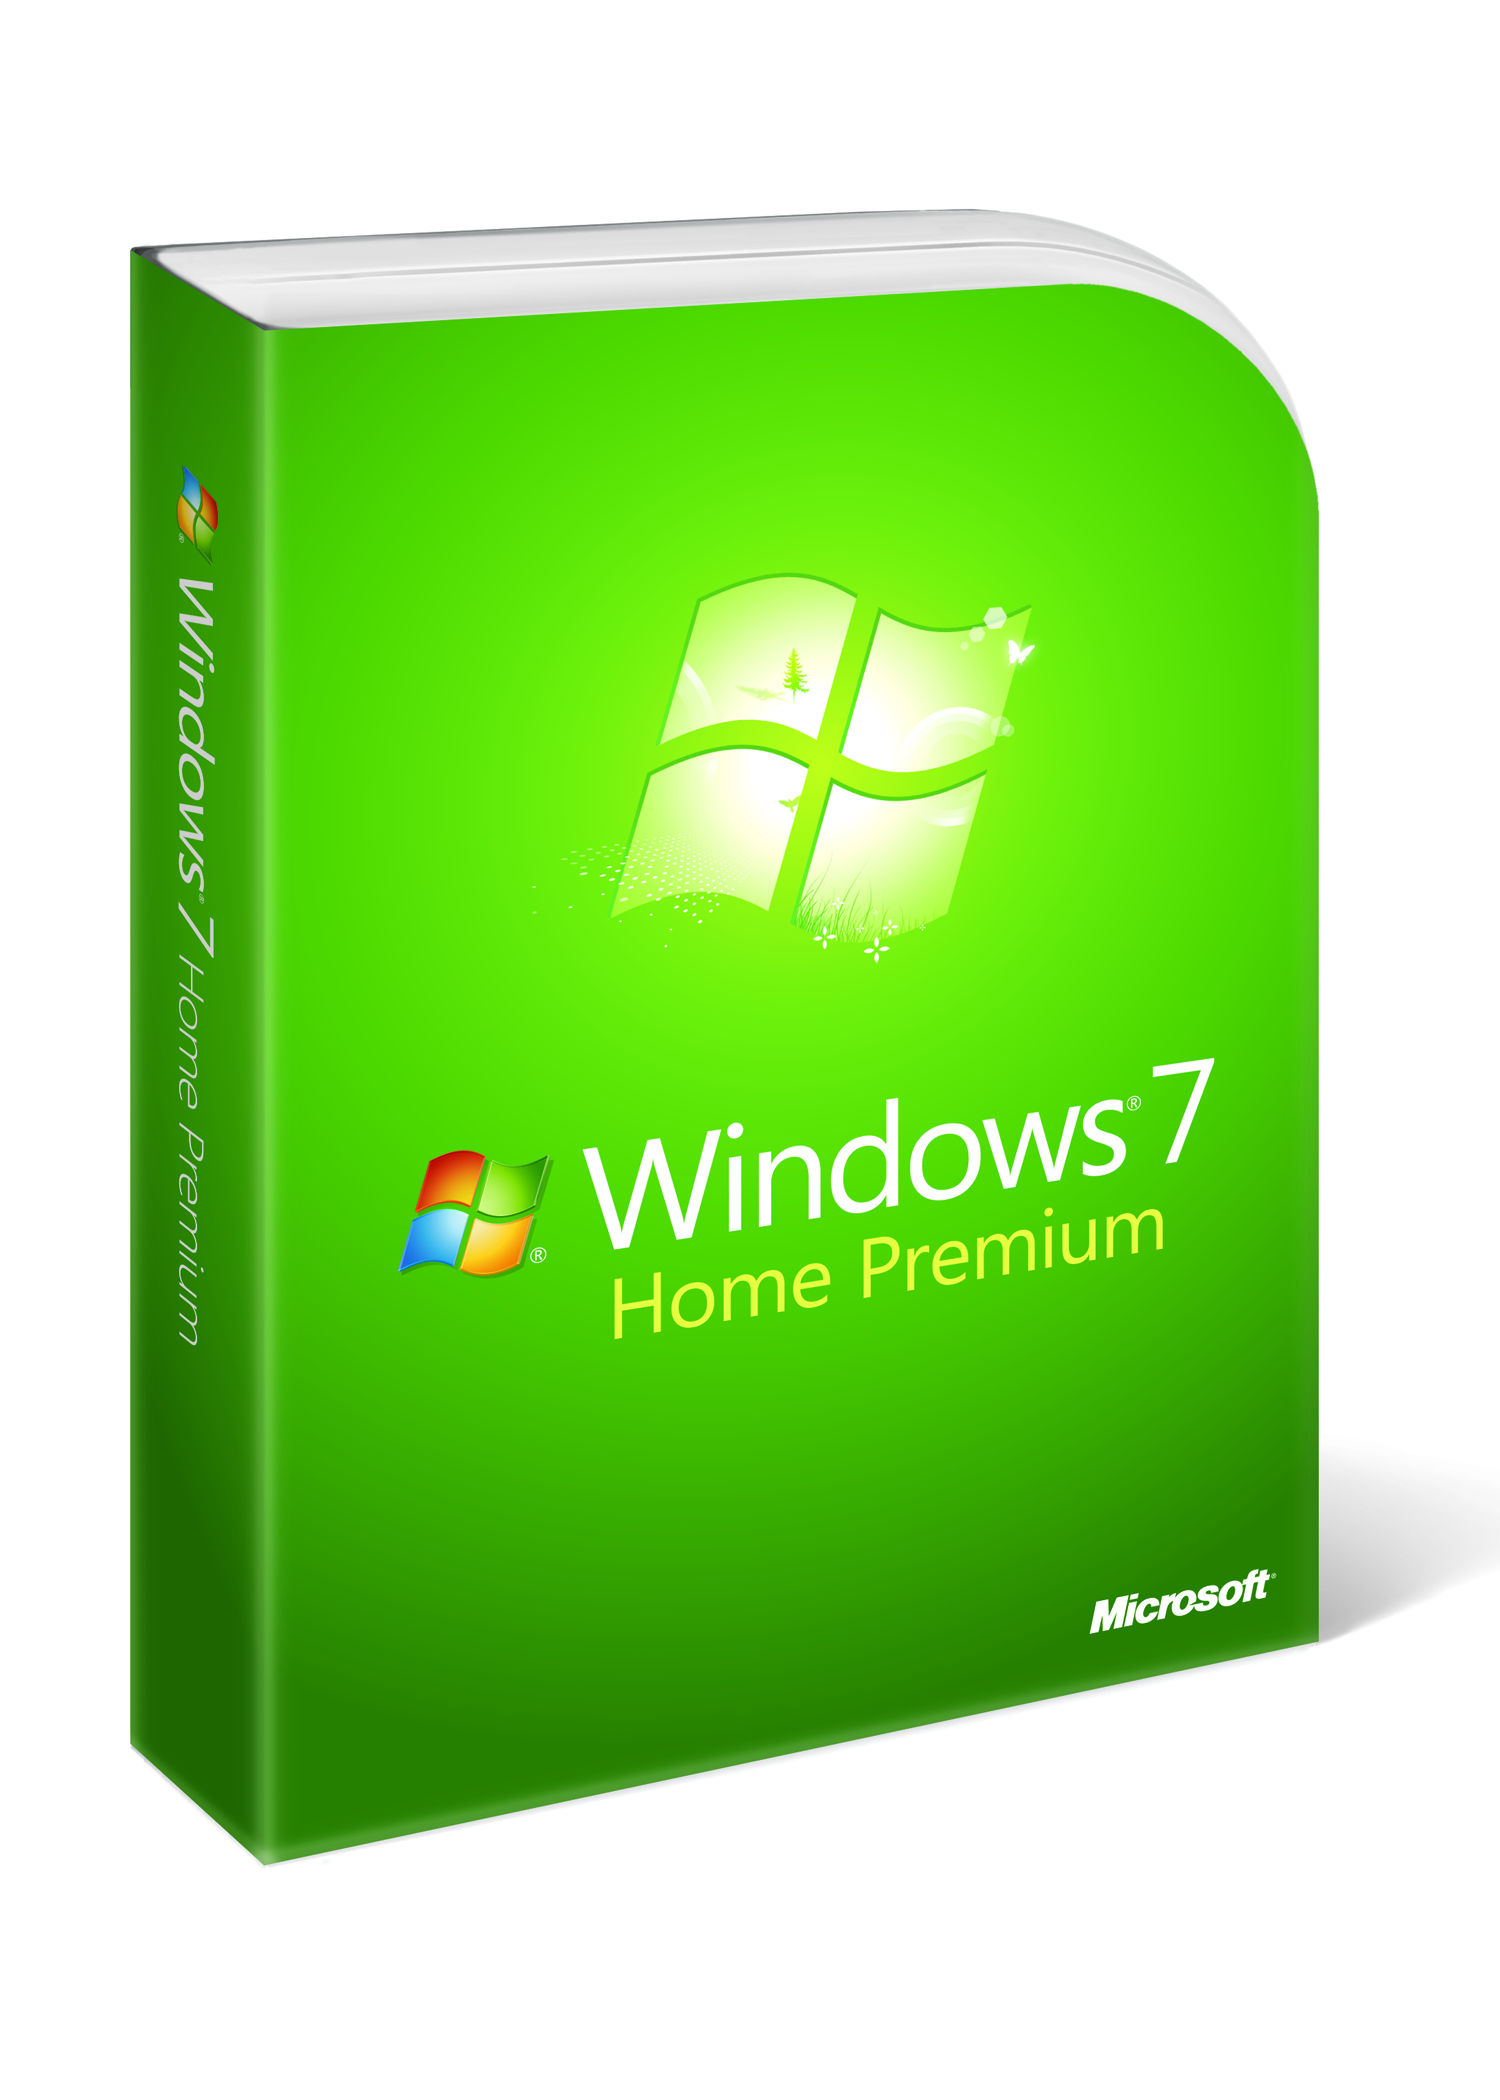 Microsoft: koniec pełnego wsparcia Windows 7 jest bliski